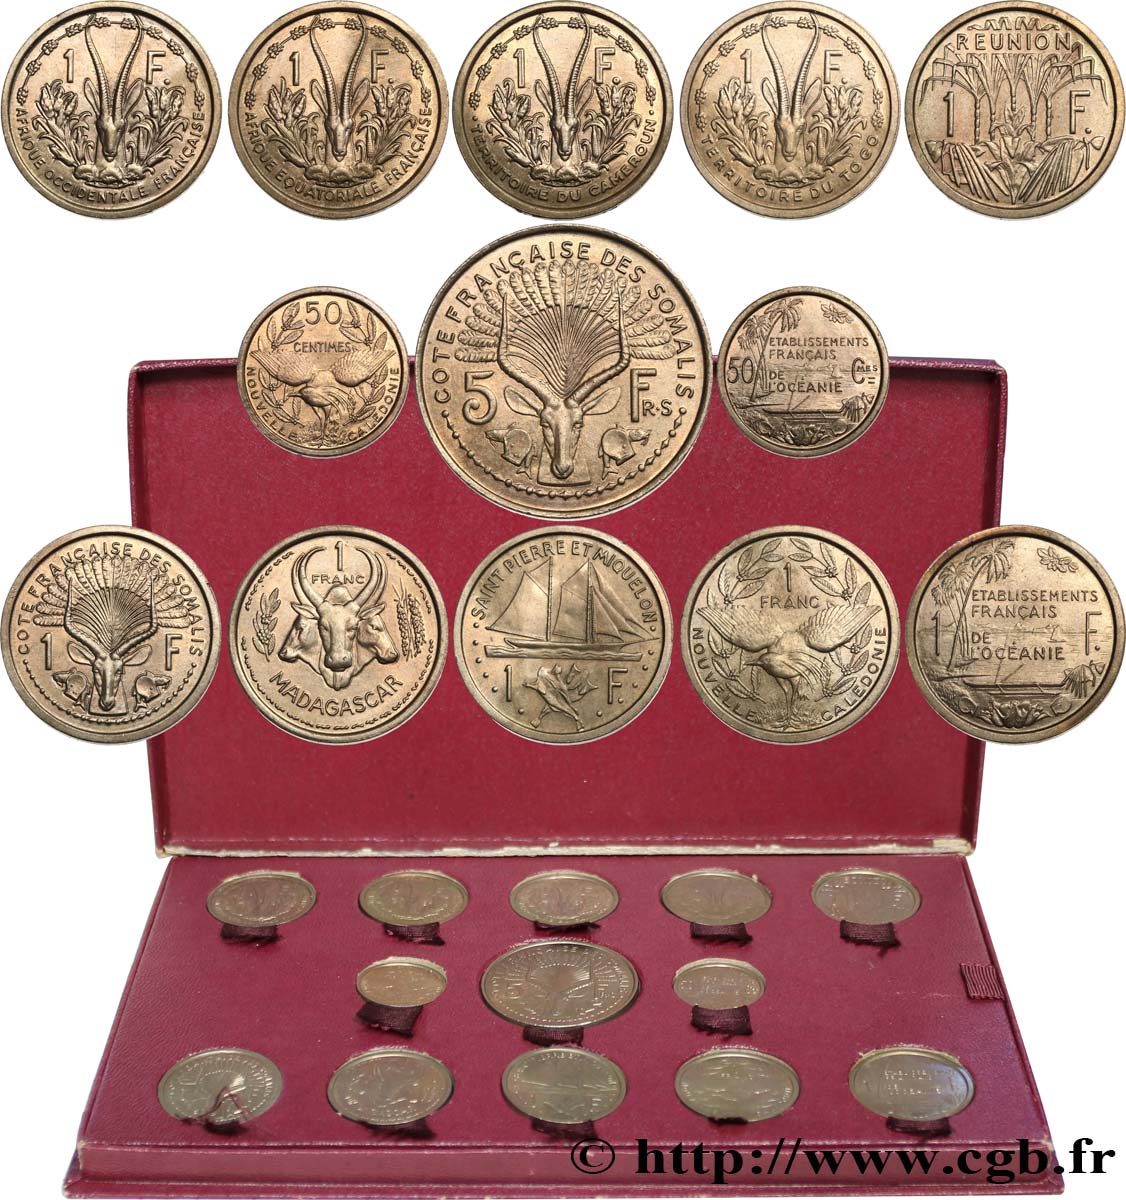 UNIóN FRANCESA - CUARTA REPúBLICA Coffret de 23 essais Union Française pour les colonies en bronze-nickel 1948-1949 Paris SC 